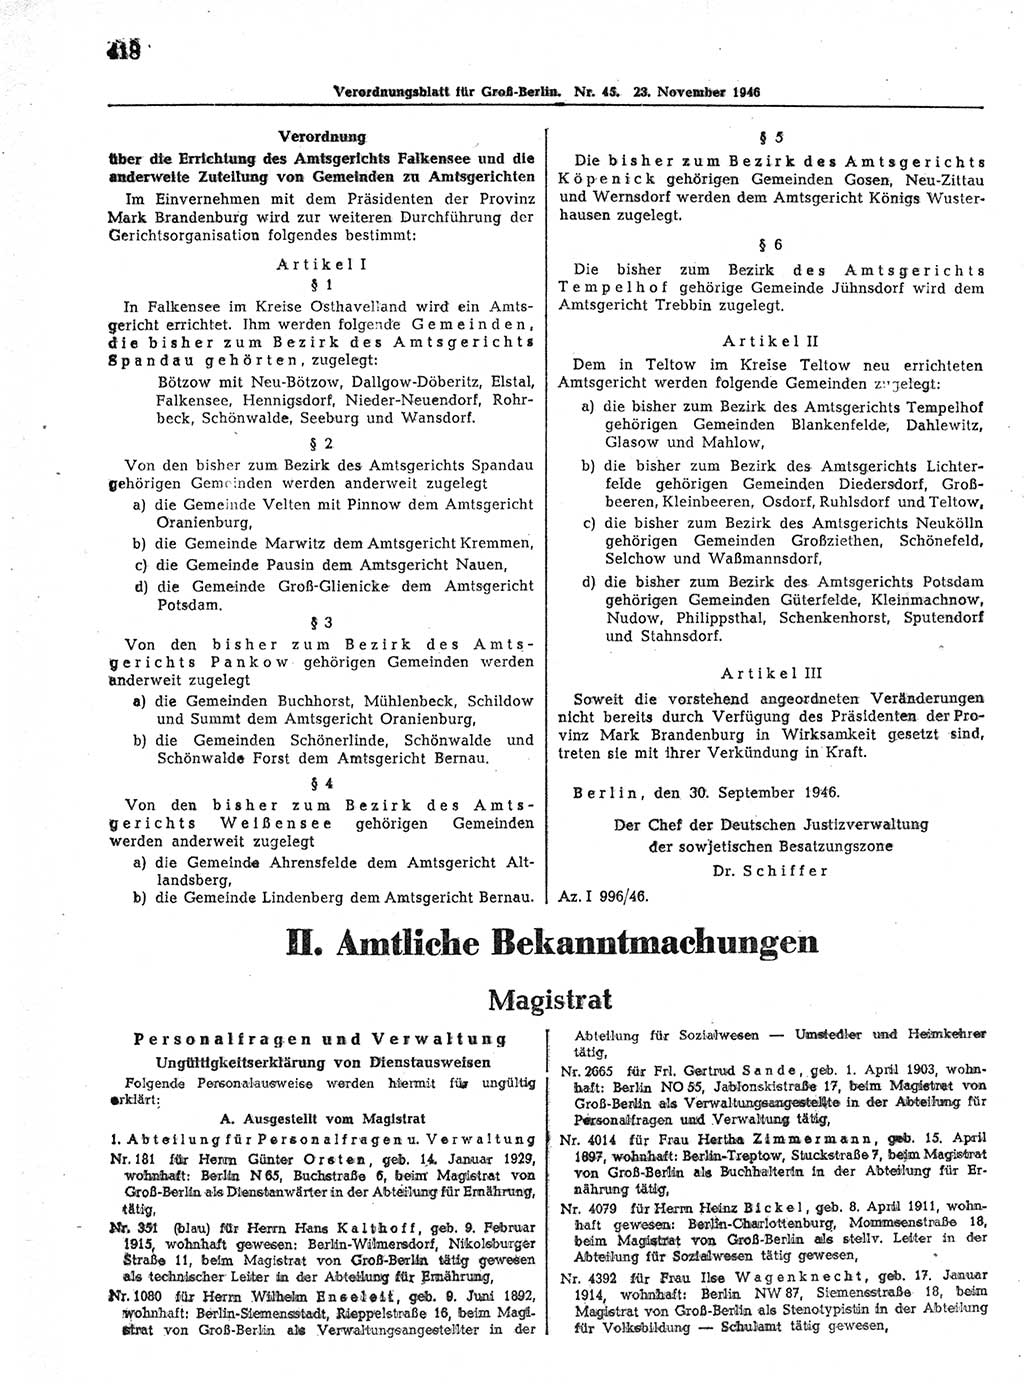 Verordnungsblatt (VOBl.) der Stadt Berlin, für Groß-Berlin 1946, Seite 418 (VOBl. Bln. 1946, S. 418)